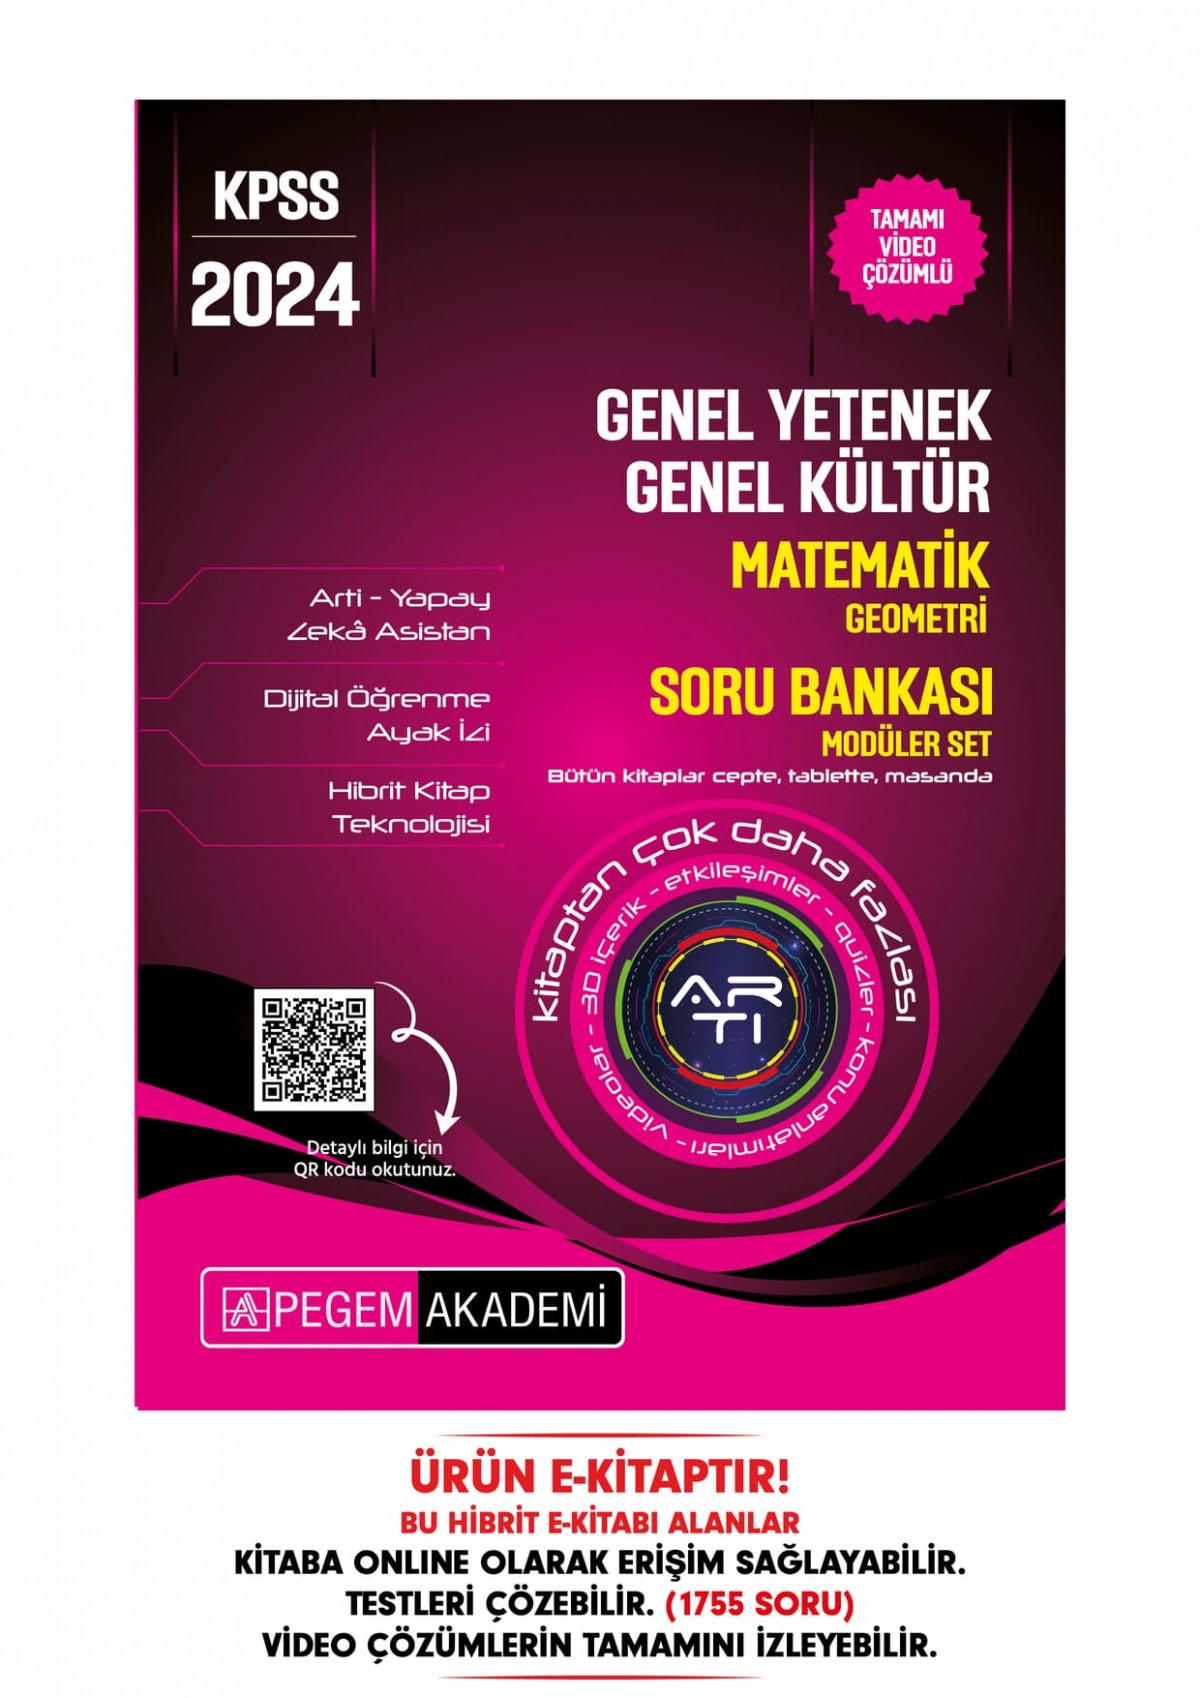 2024 KPSS Genel Yetenek Genel Kültür Matematik-Geometri Soru Bankası Hibrit E-Kitap